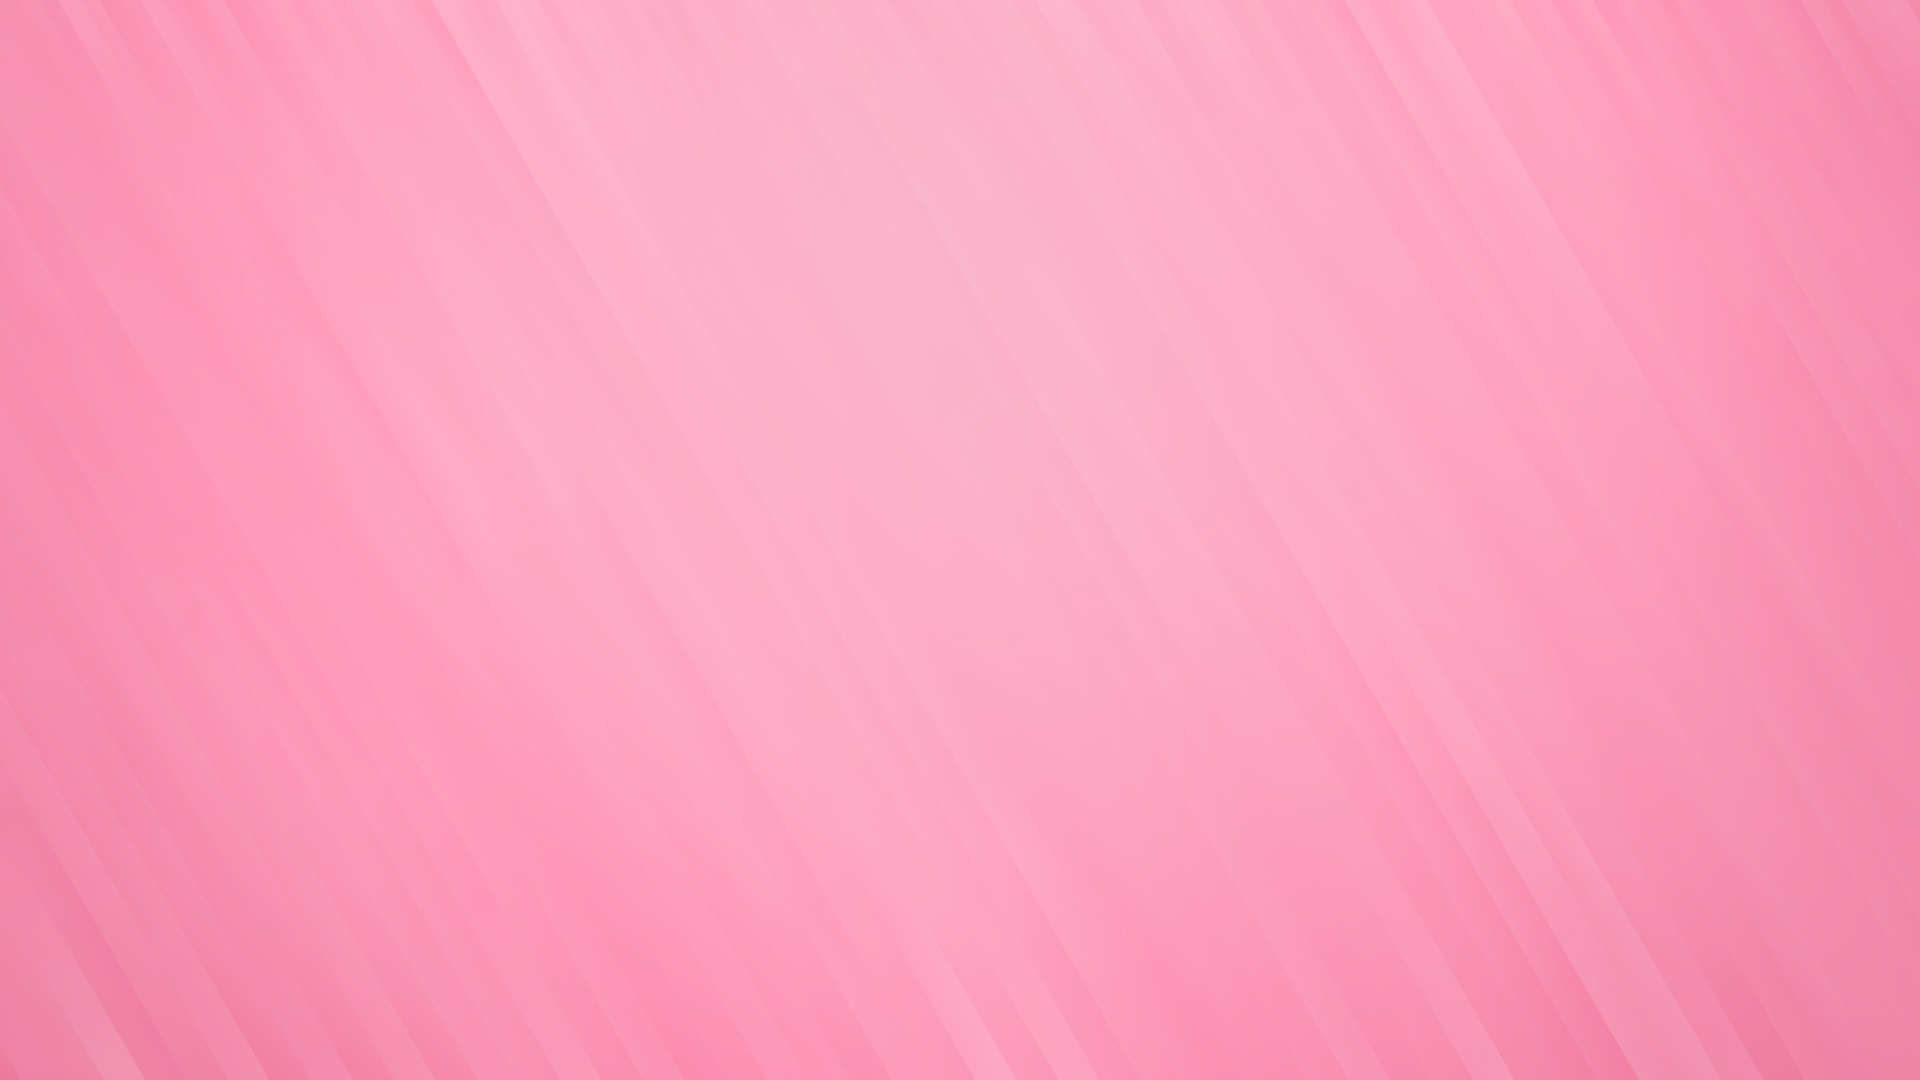 Wallpaper Pink Minimalist